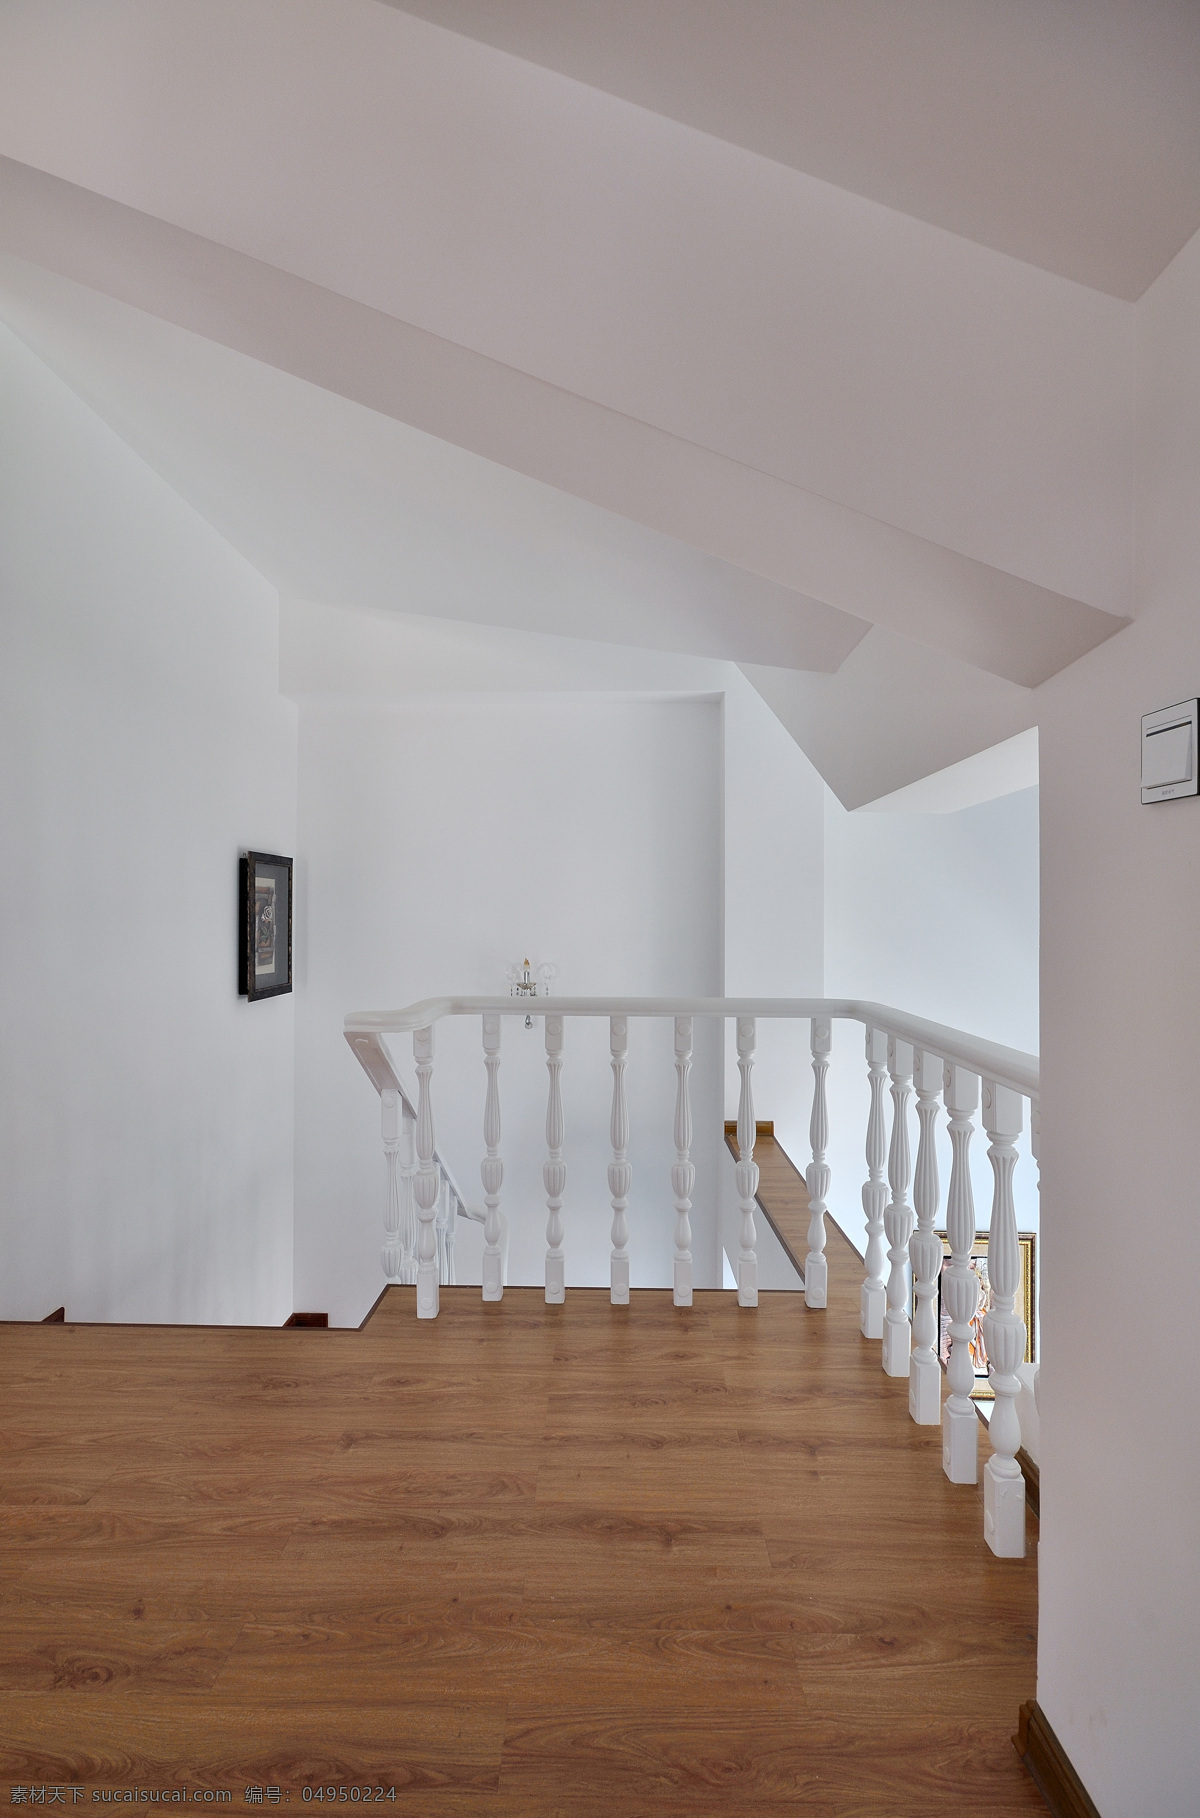 简约 实木 楼梯 设计图 家居 家居生活 室内设计 装修 室内 家具 装修设计 环境设计